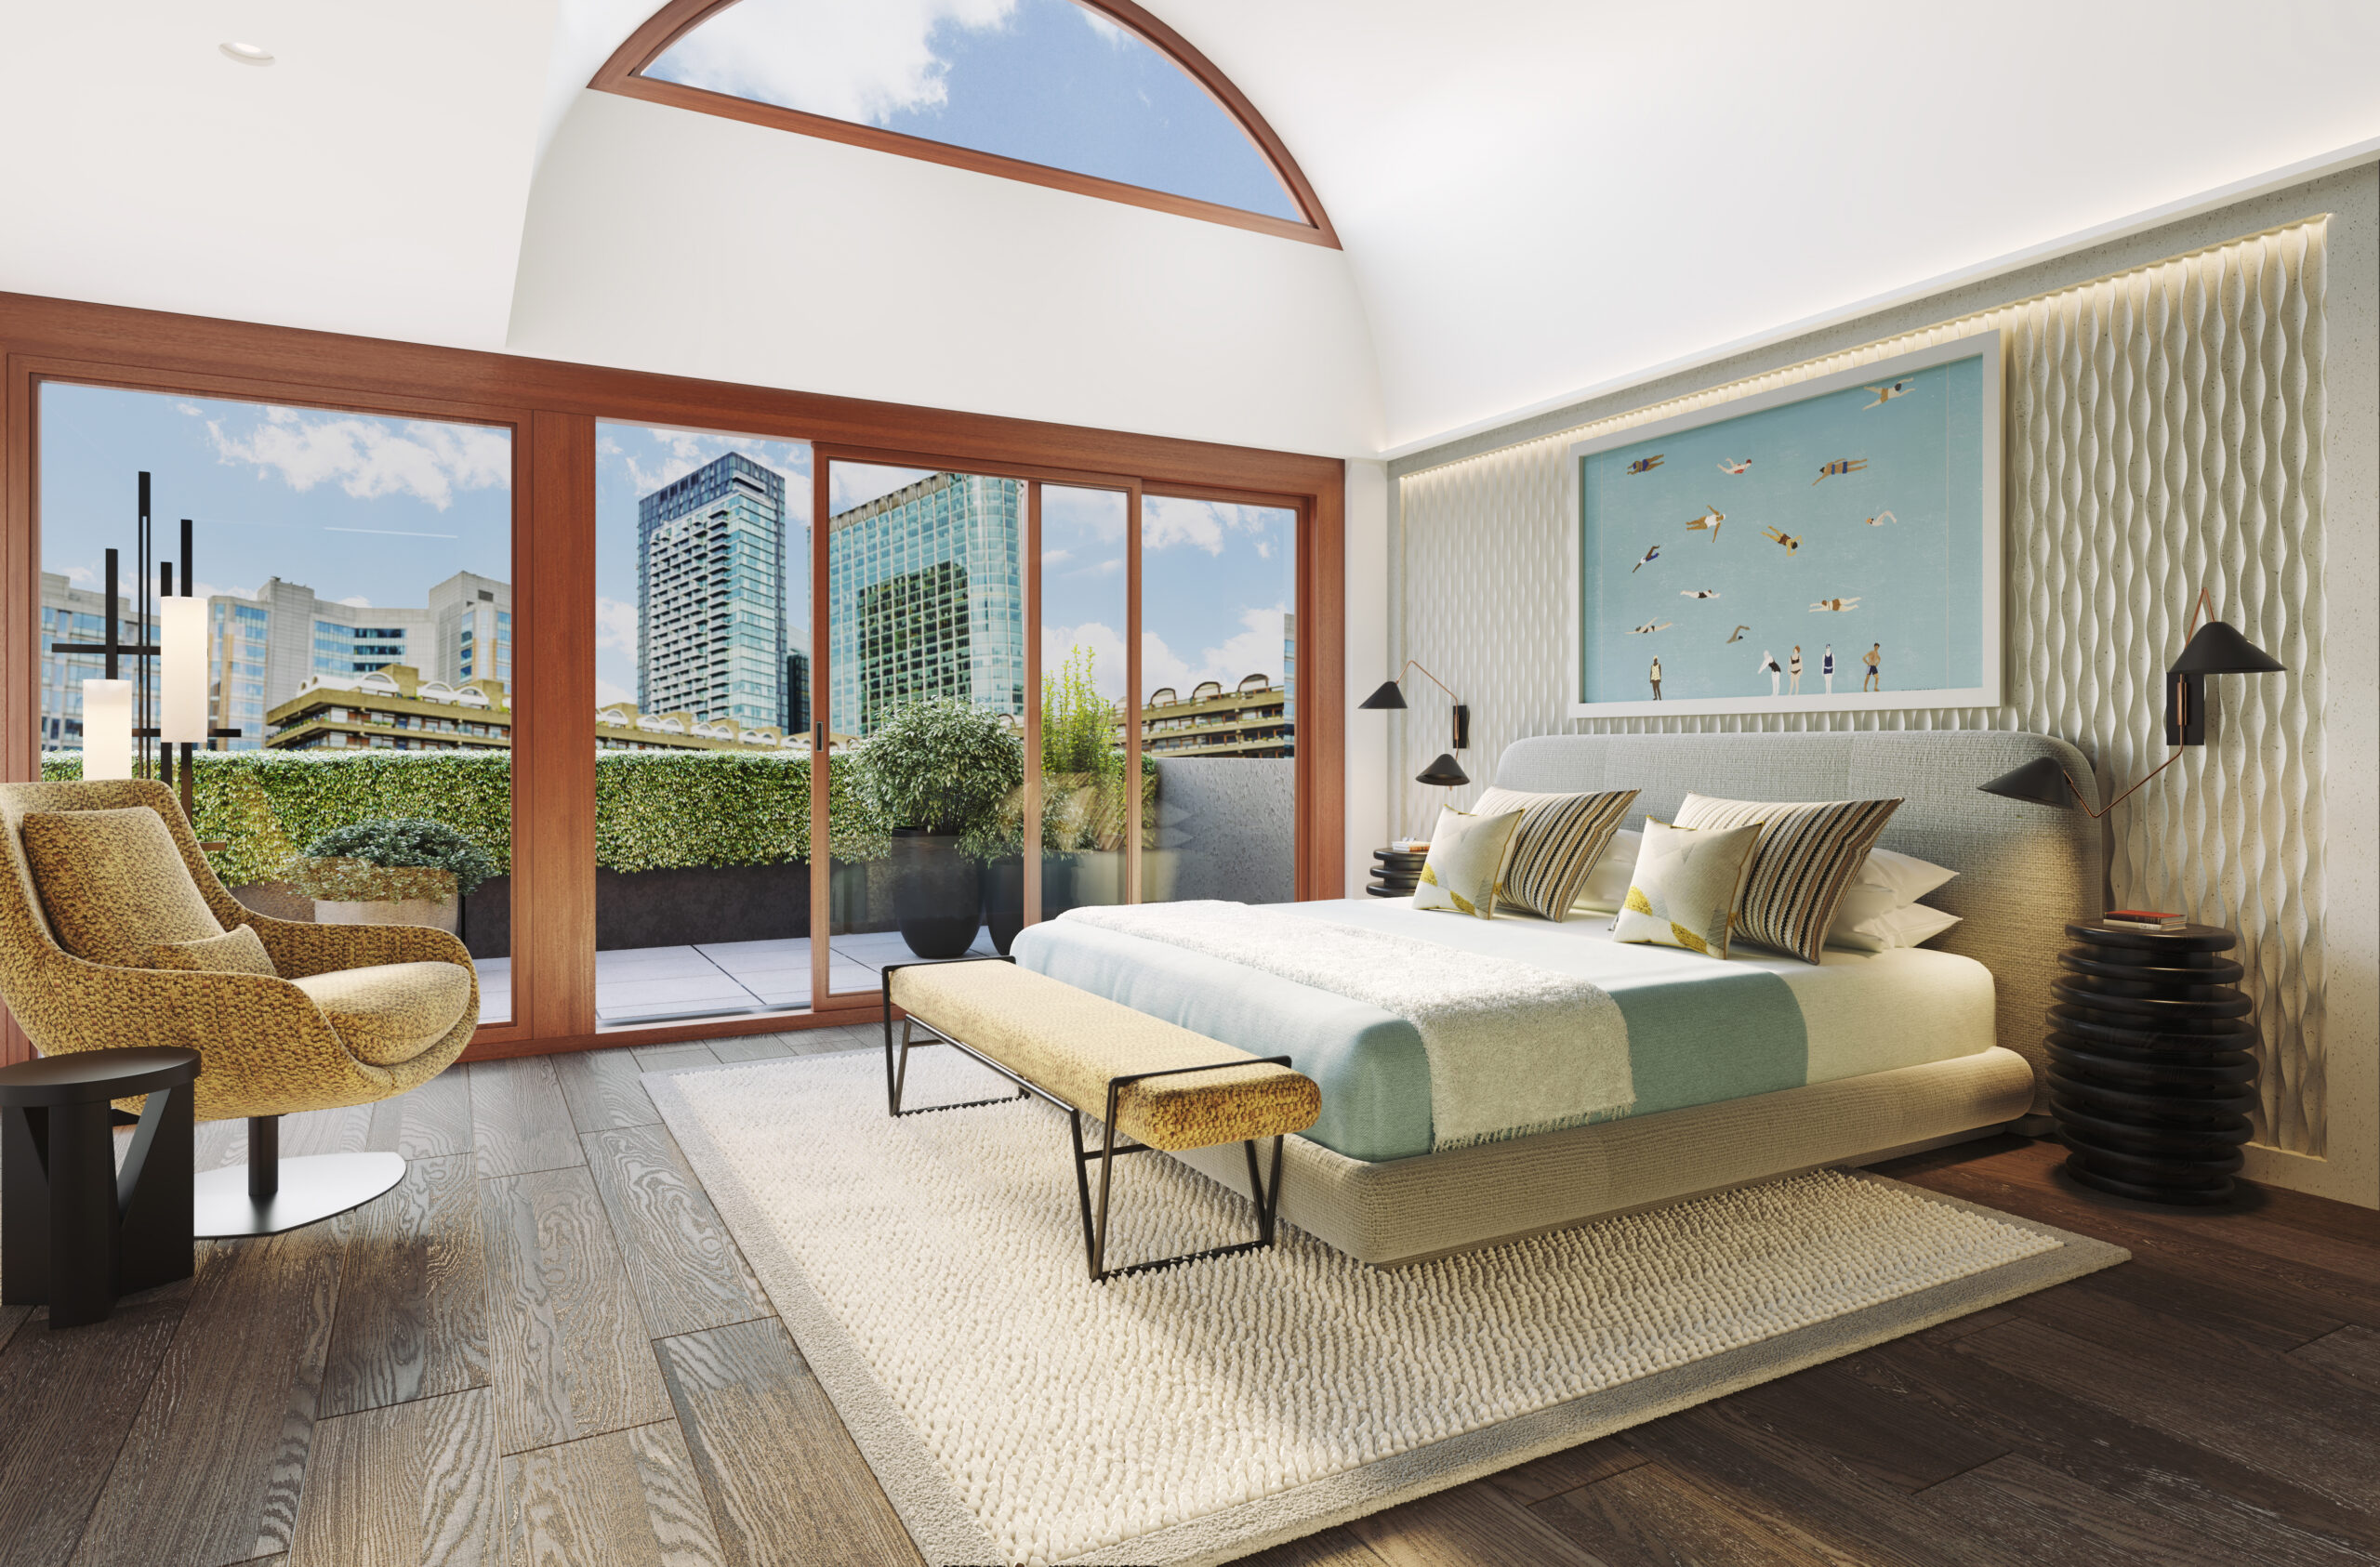 Barbican master bedroom with barrel ceiling - City Pied a Terre - LLI Design